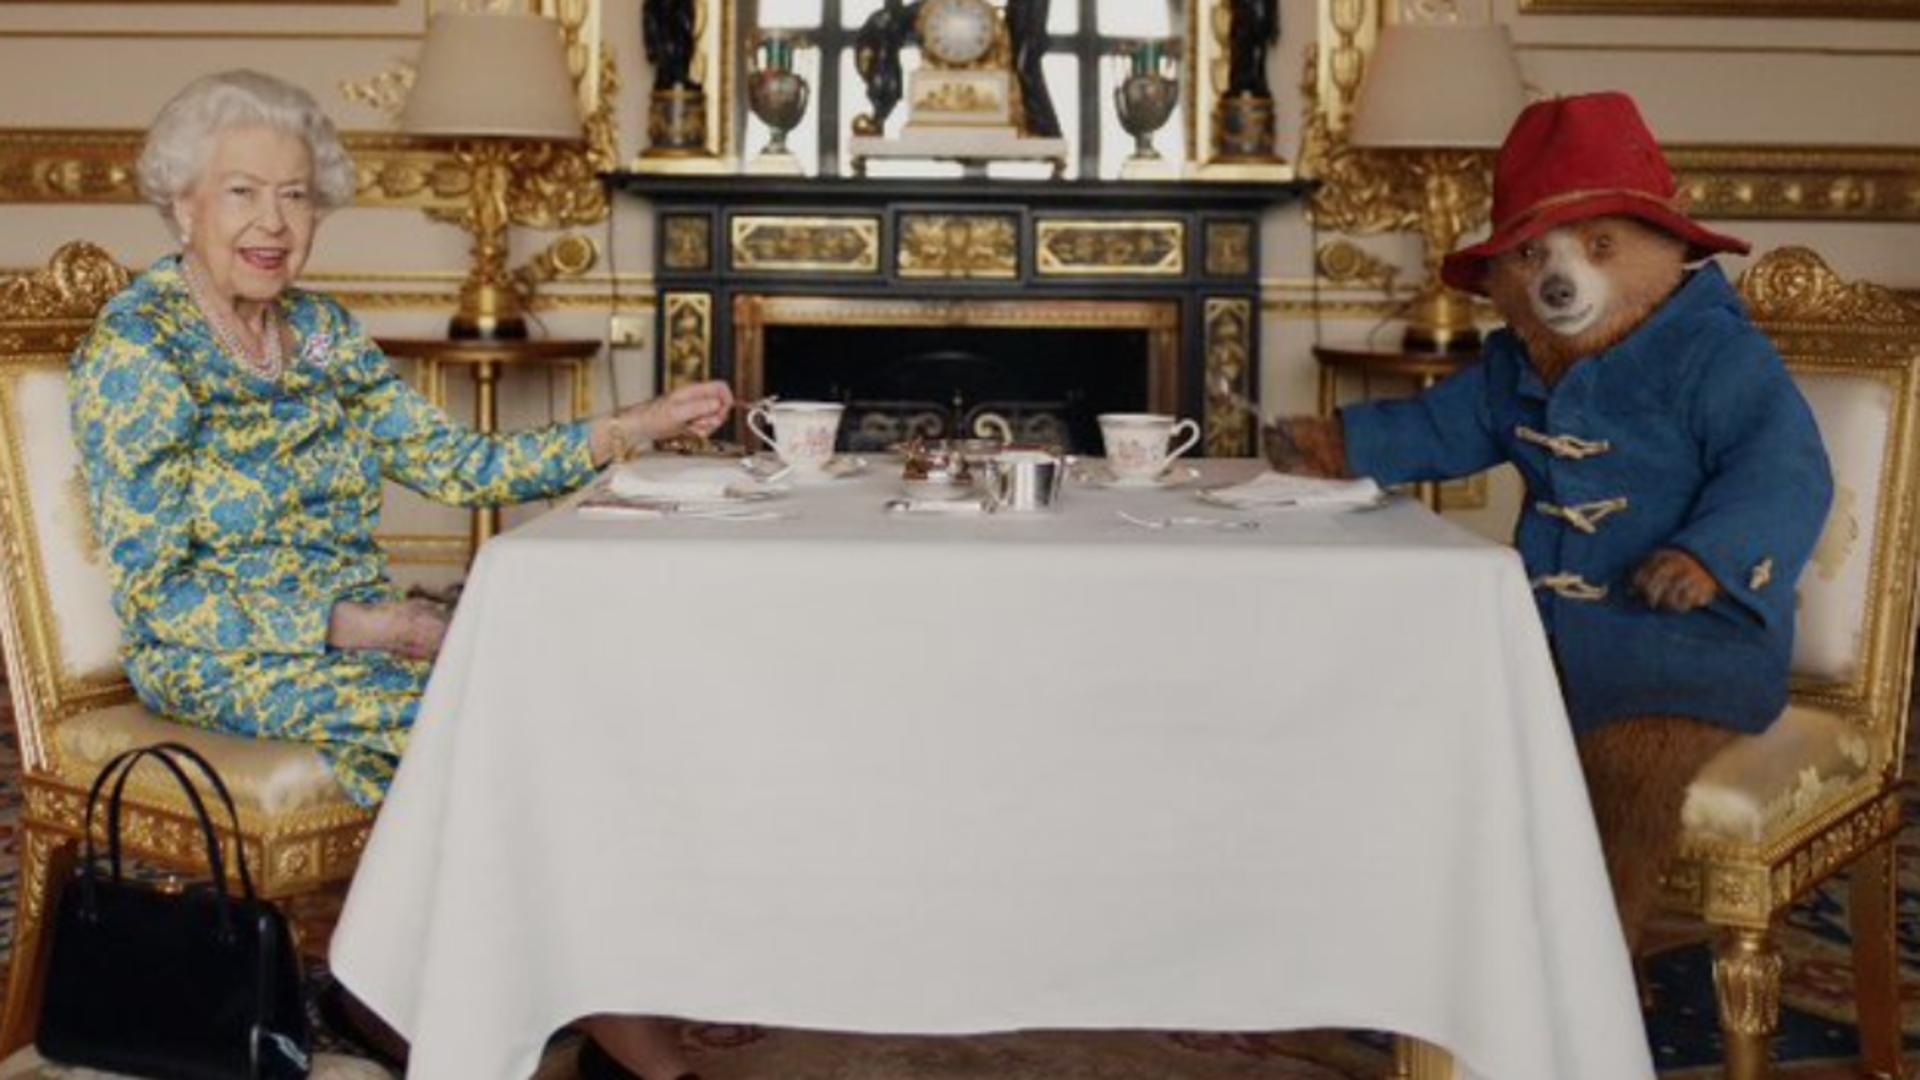 Ursulețul Paddington, apariție-surpriză la Jubileul reginei Angliei - Dialog la ceaiul de la ora 5, la Buckingham